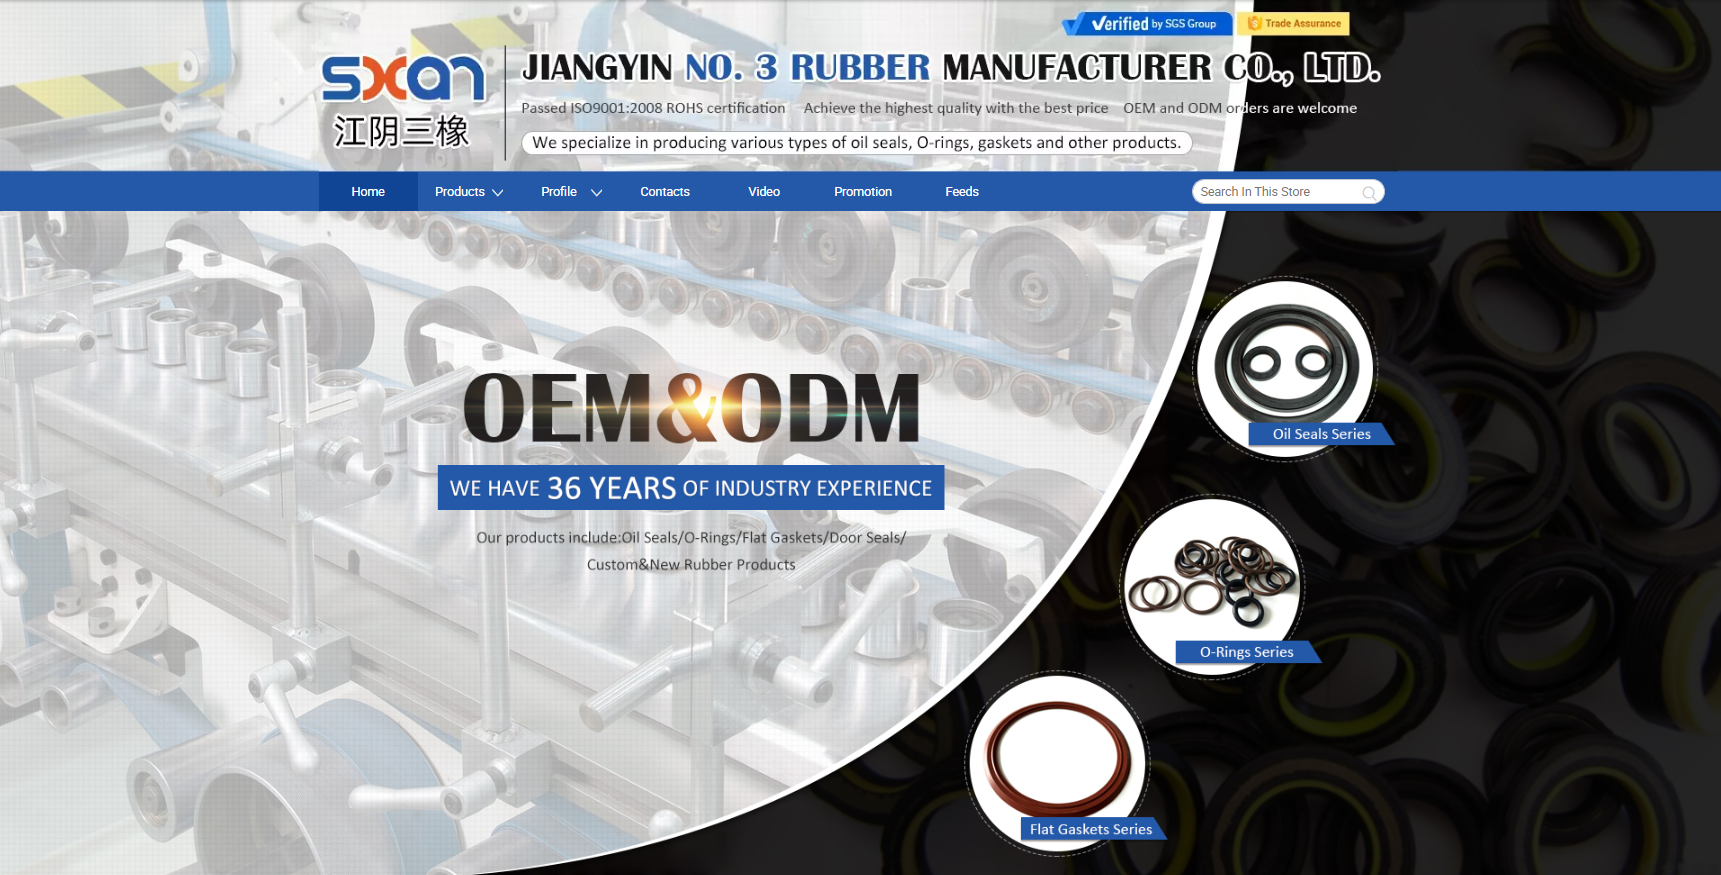 Jiangyin No. 3 Rubber Manufacturer Co Ltd